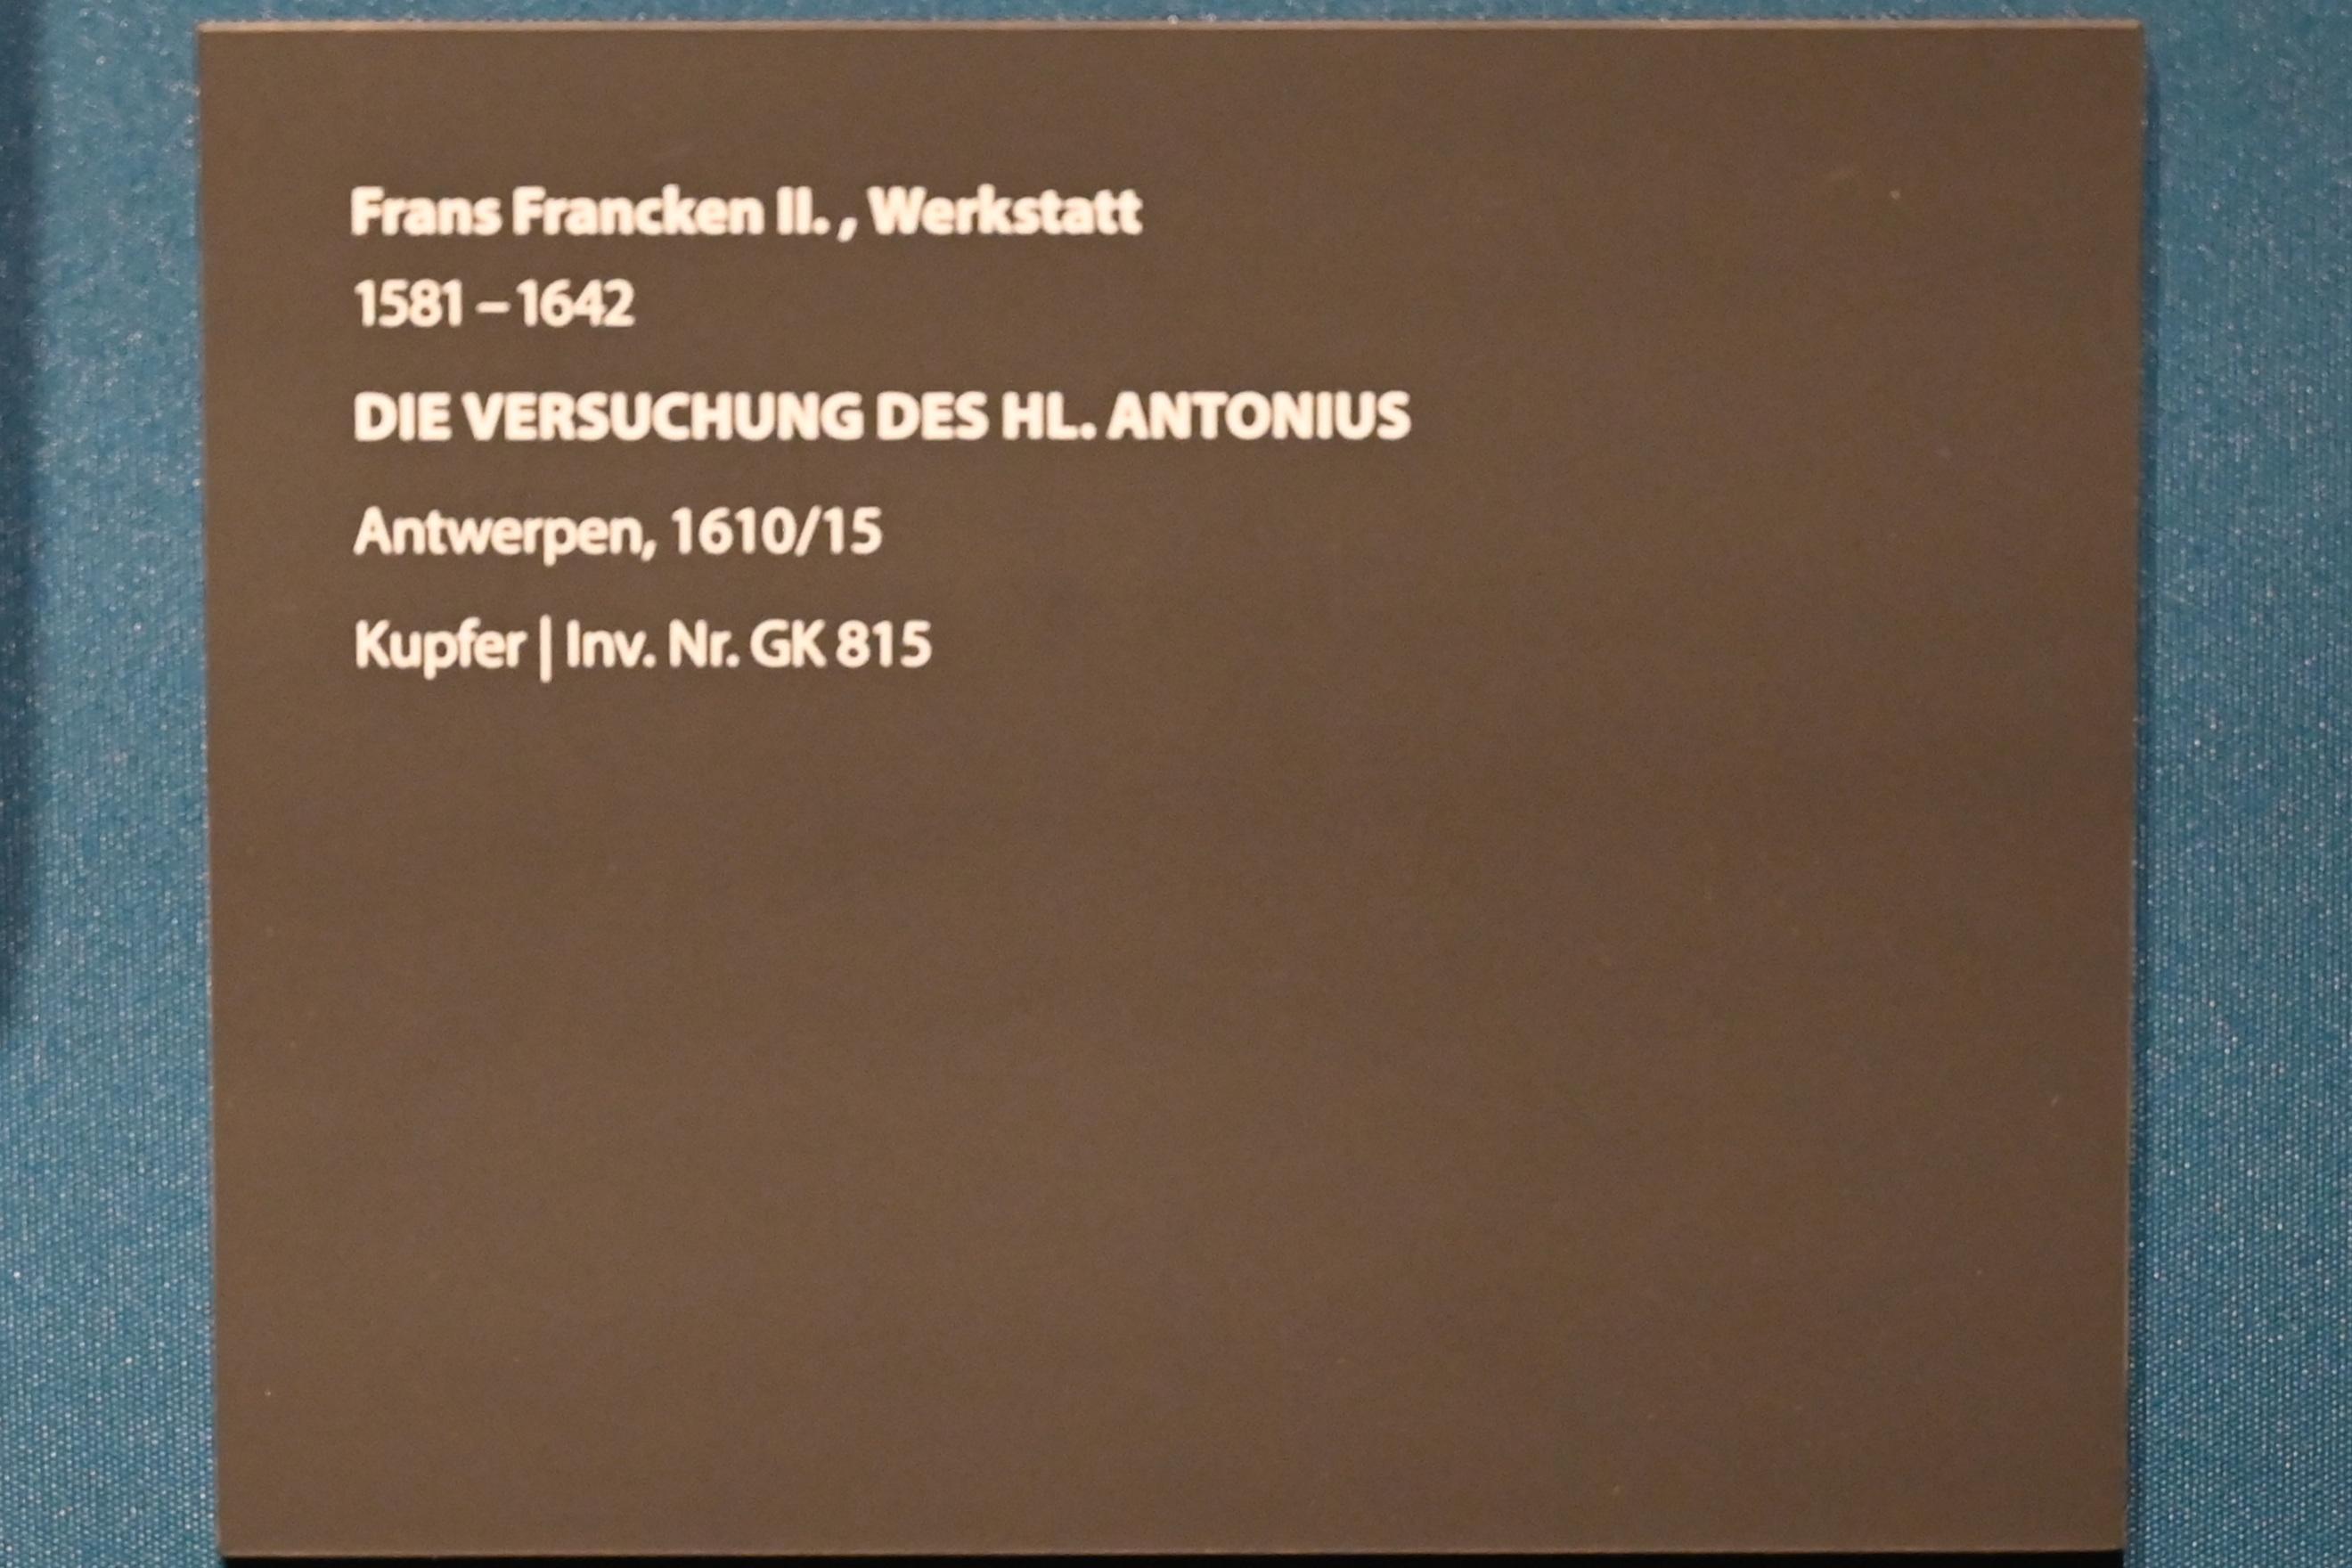 Frans Francken der Jüngere (Werkstatt) (1612–1627), Die Versuchung des hl. Antonius, Darmstadt, Hessisches Landesmuseum, Saal 5, 1610–1615, Bild 2/2